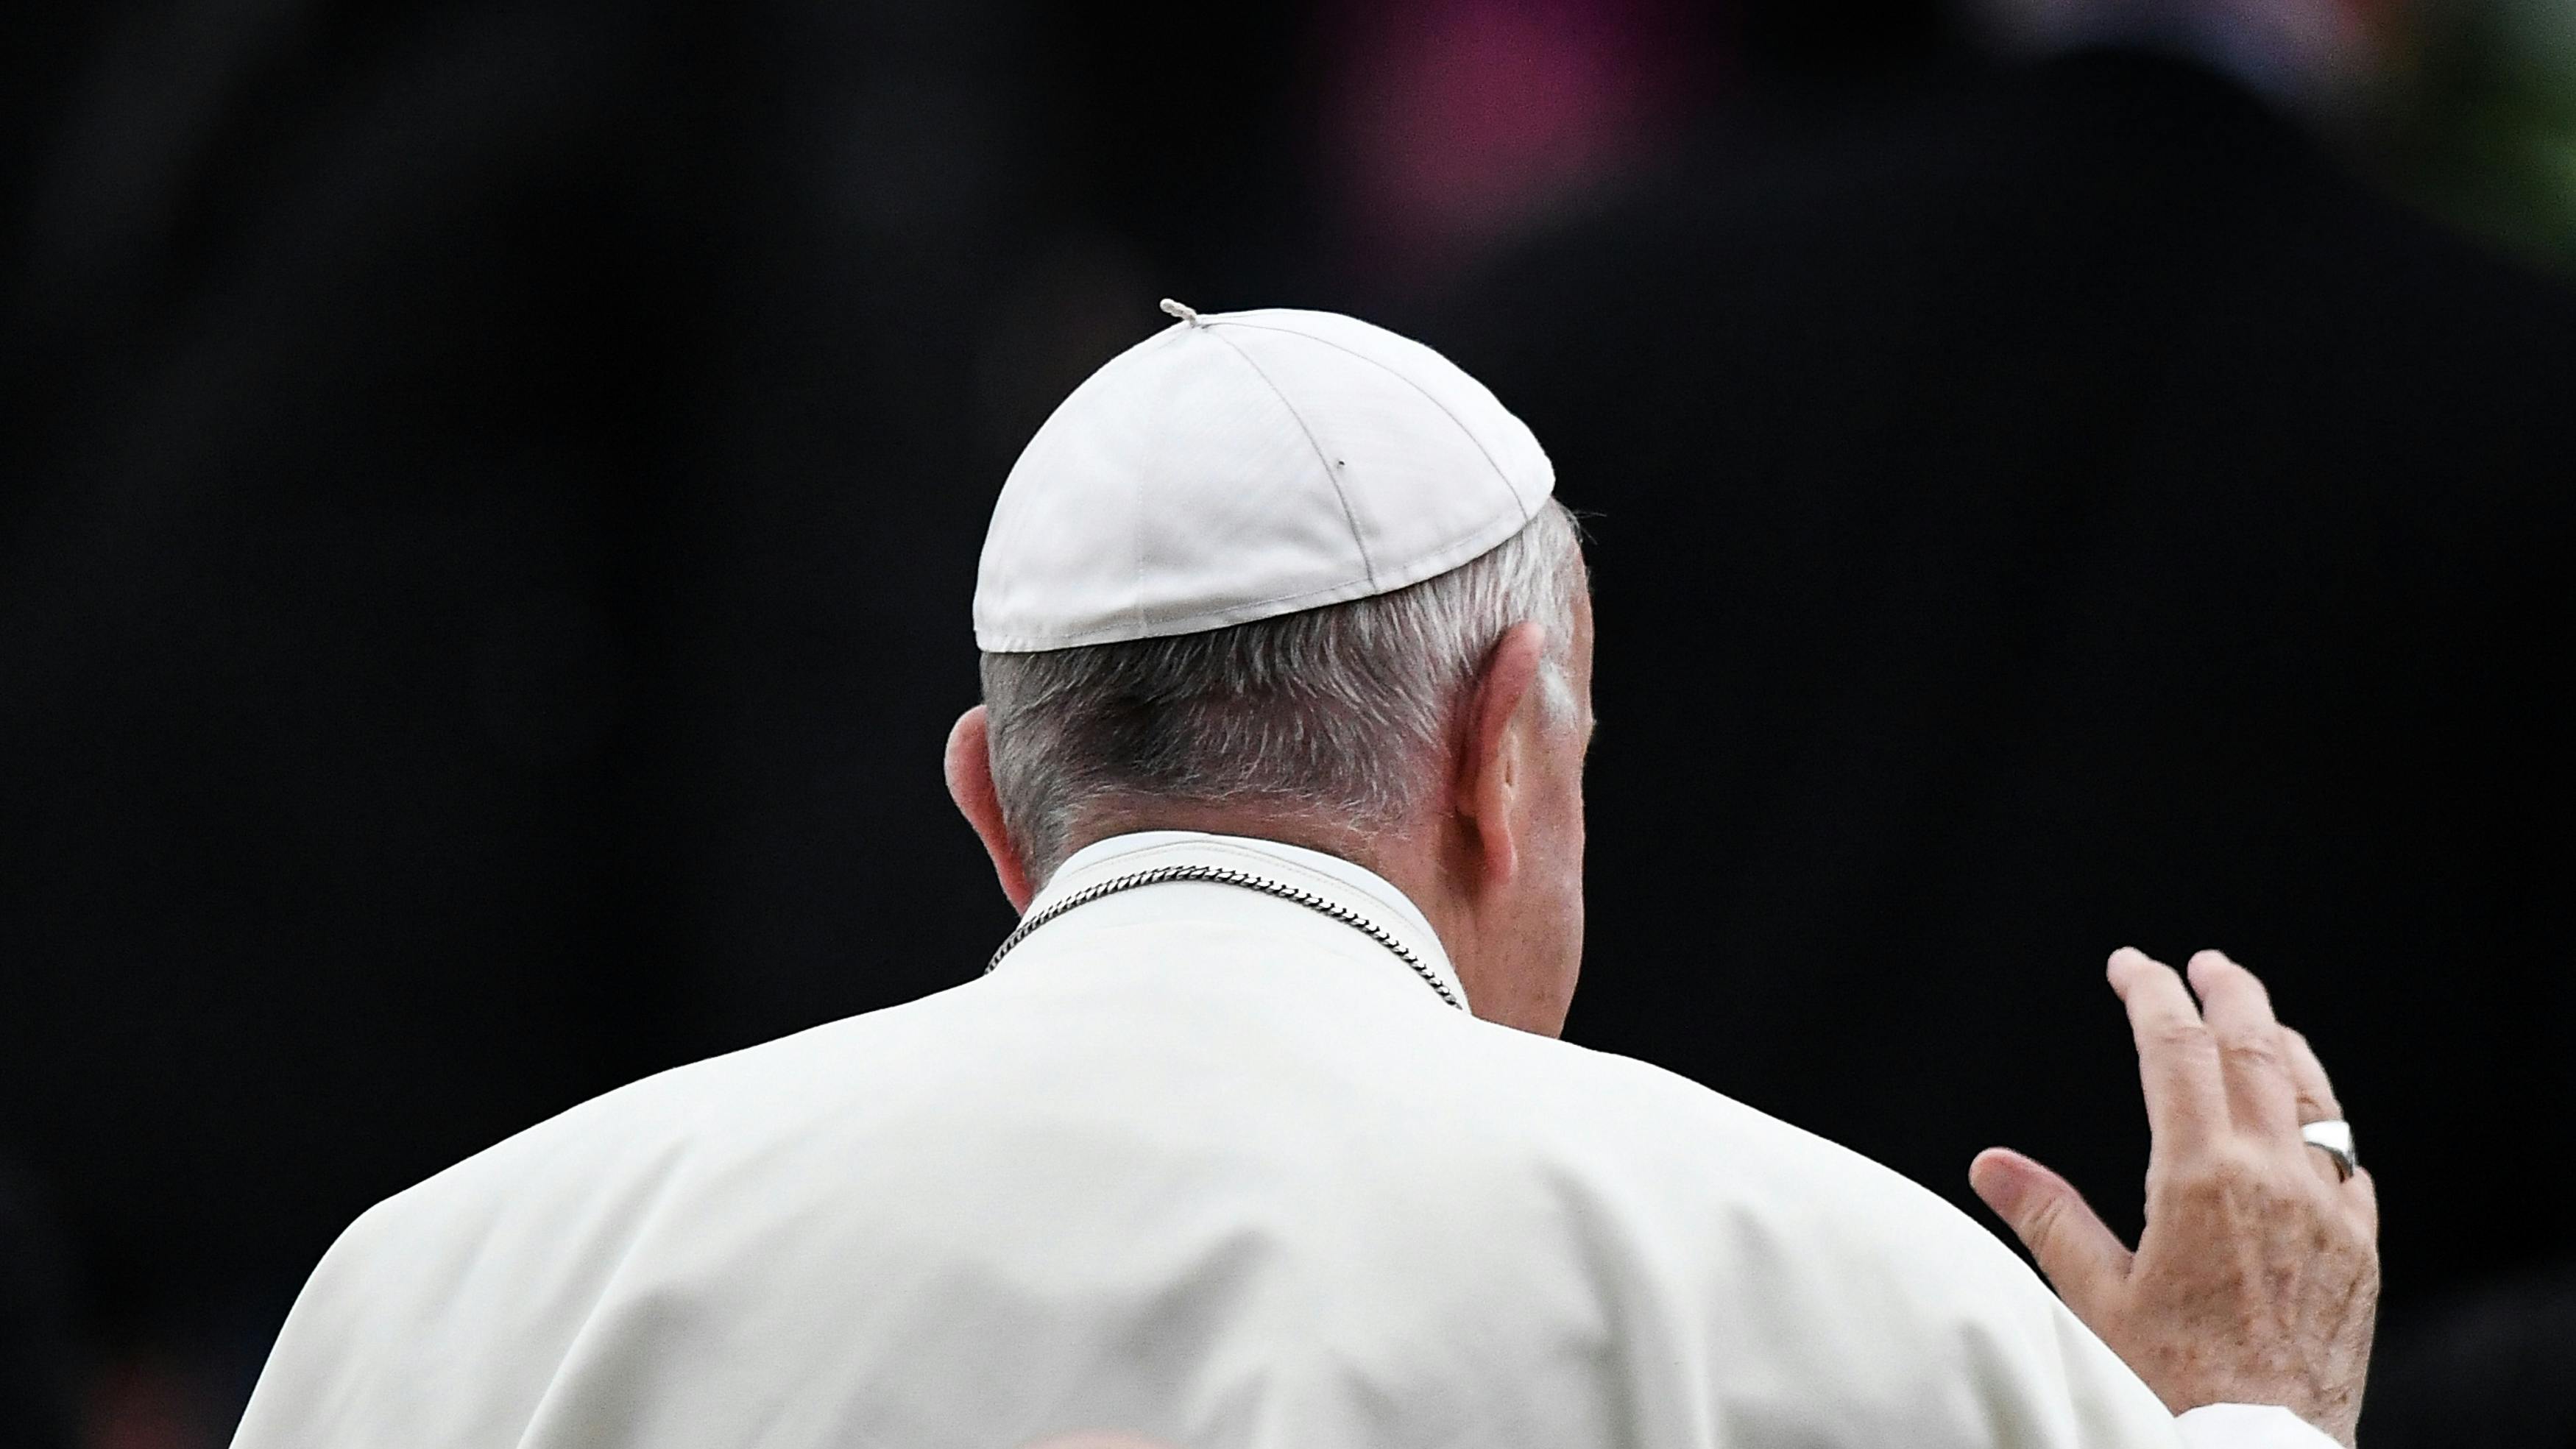 Wir sehen den Rücken des Papstes, durch seine Kopfbedeckung in Form kleinen Rundkappe, und sein weißes Gewand klar erkennbar. Er hebt die Hand zum große einer nicht sichtbaren Menge oder Person.